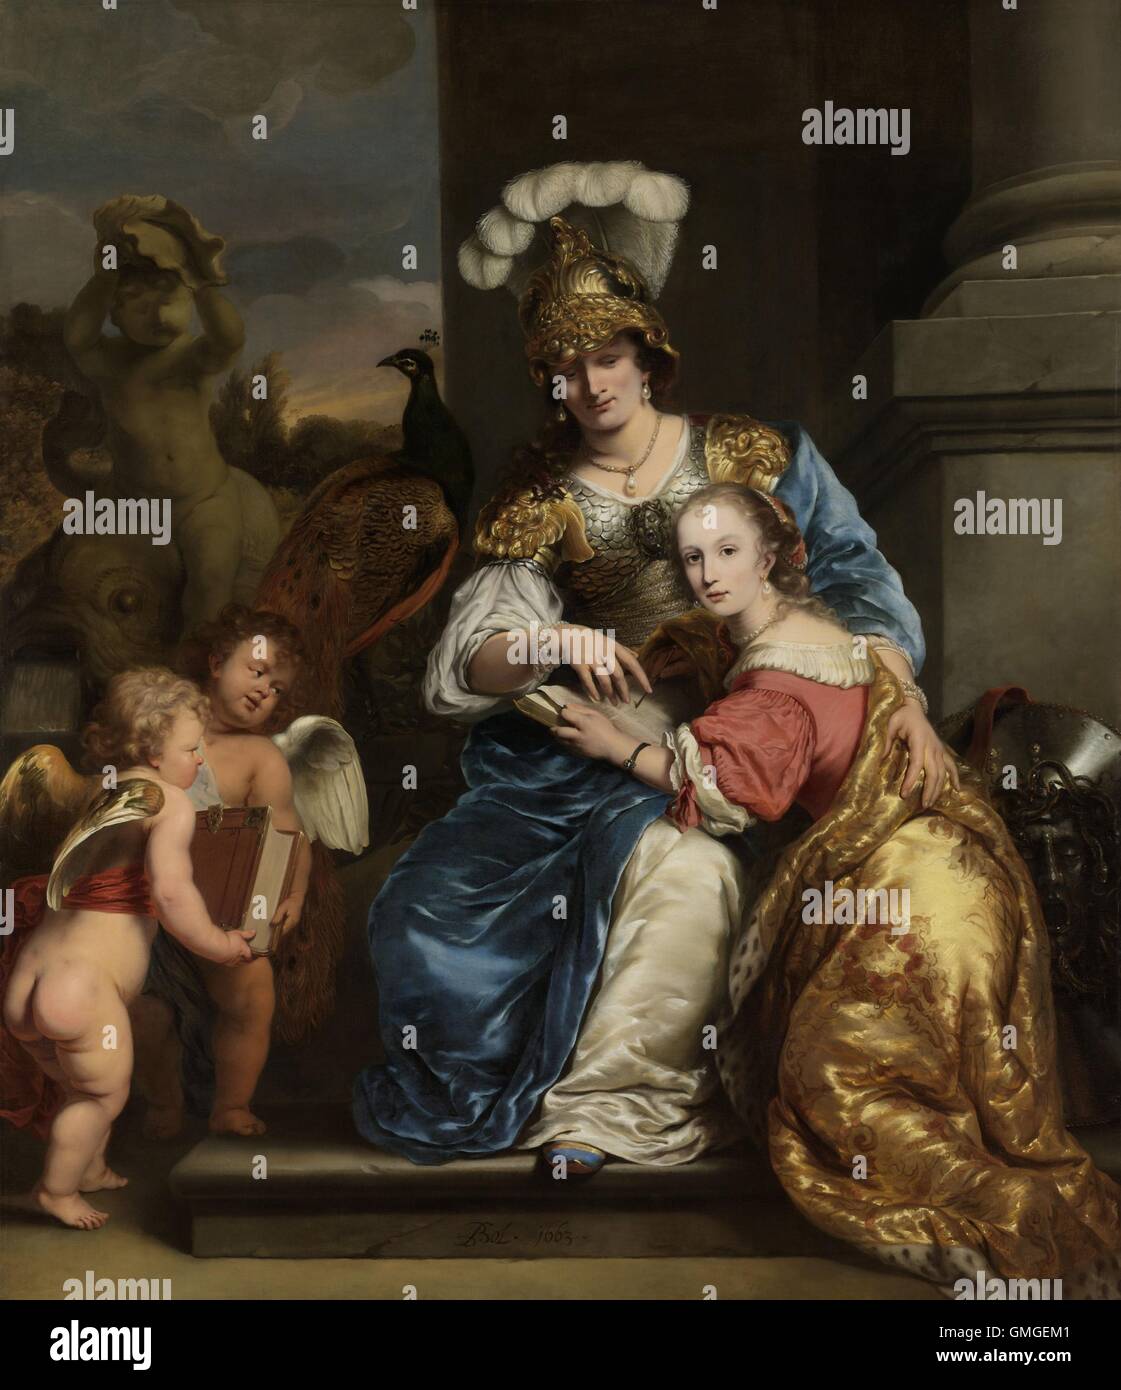 Marguerite voyage comme Minerva, demandant à sa Sœur Anna Maria Voyage, par Ferdinand Bol, 1663, la peinture hollandaise, huile sur toile. Deux filles de riches, d'armes, Voyage famille. Dans un portrait allégorique, l'aîné est Minerve, déesse de l'art et scienc (BSLOC 2016 6 200) Banque D'Images